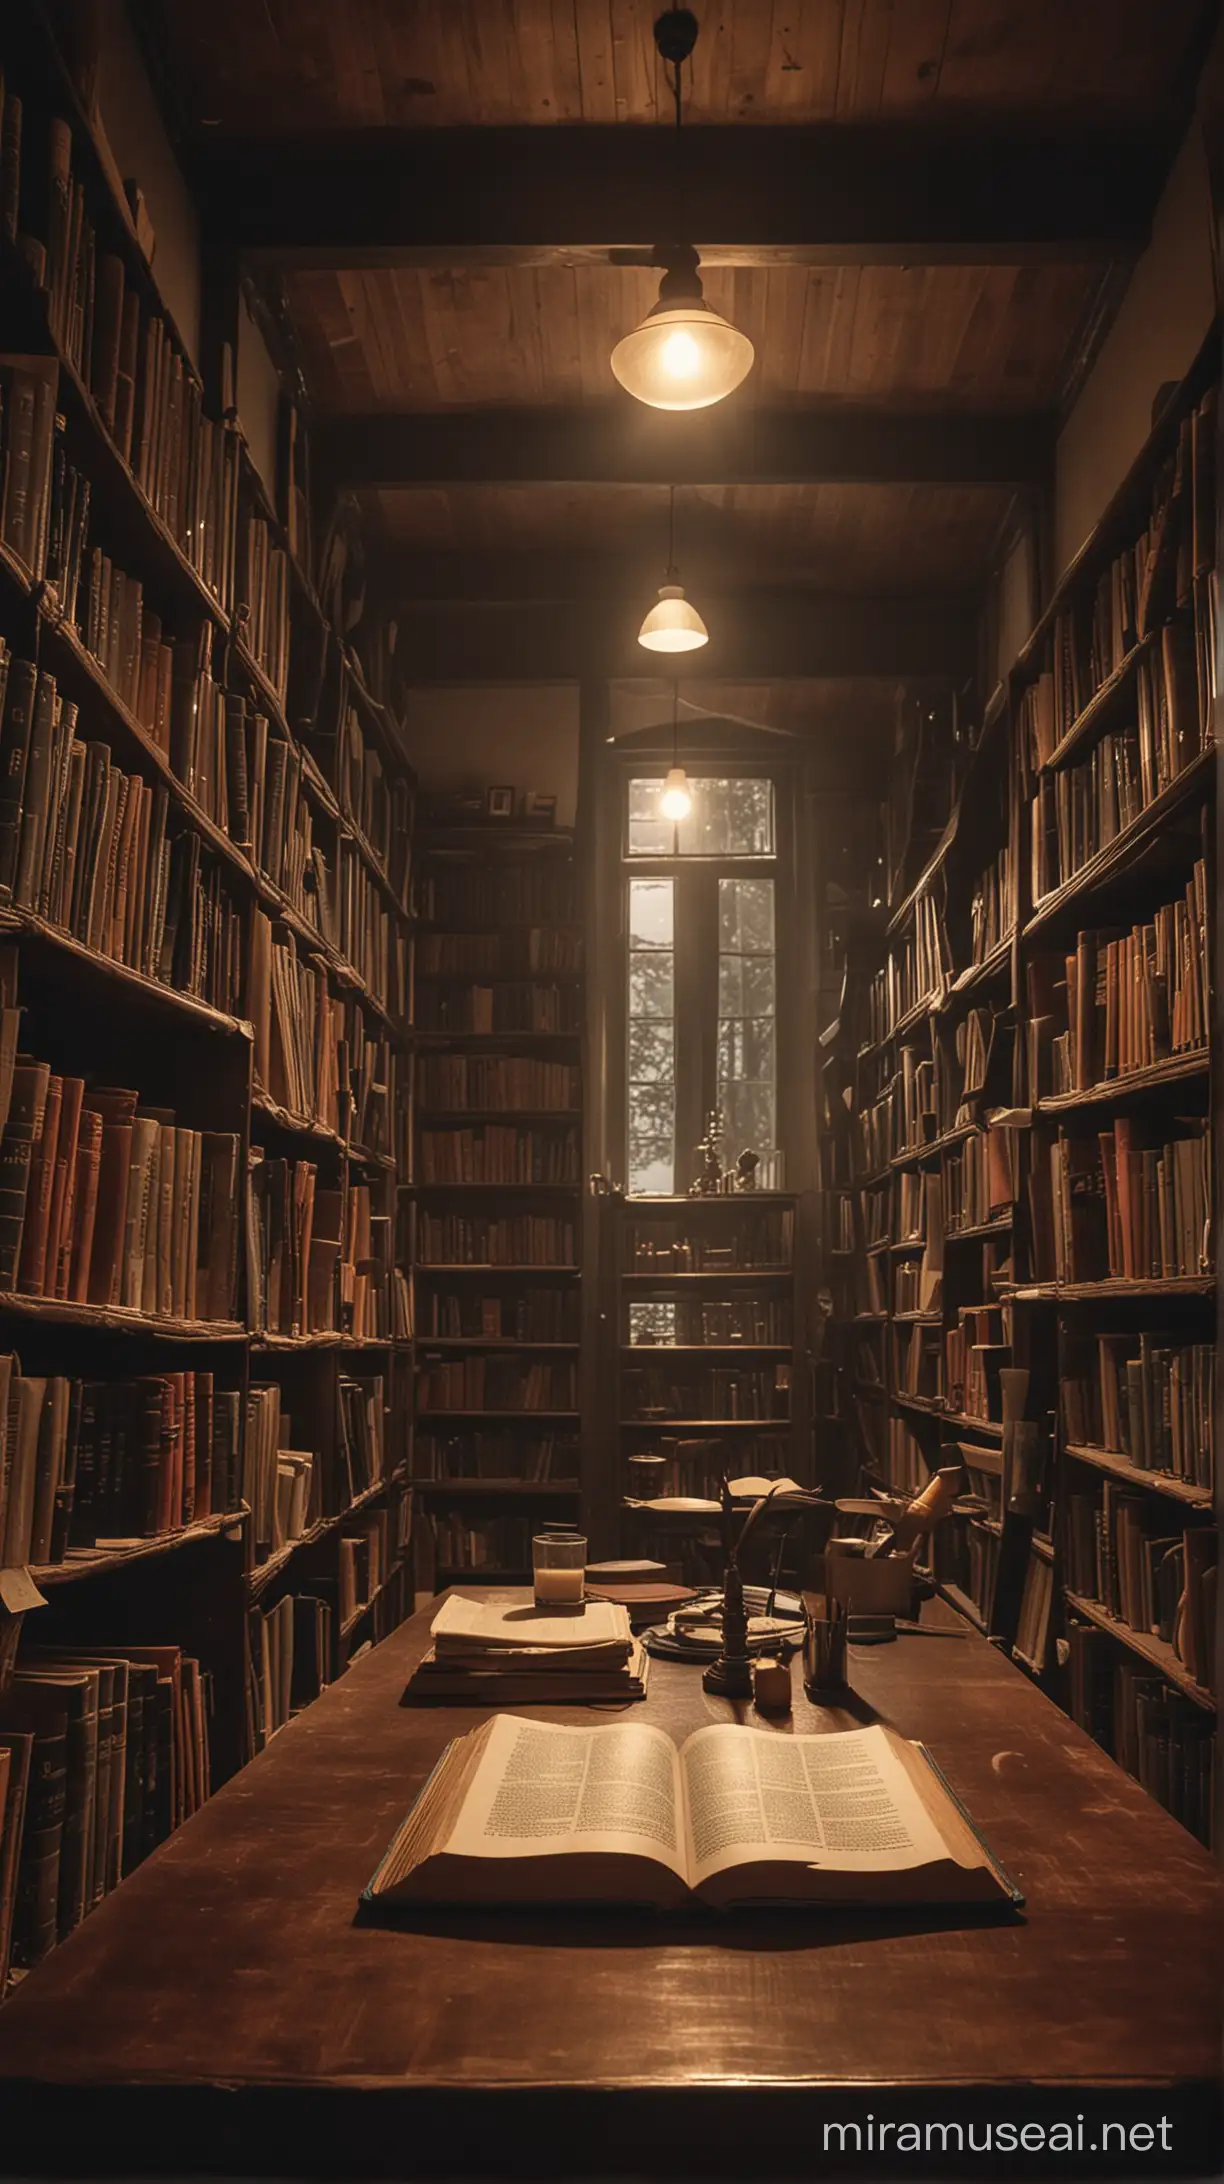 ein Buch schwebt in einer Bibliothek oberhalb eines Tisches, es herscht atmosphärische Stimmung, der Tisch ist voll mit klassischen Bibliotheksgegenständen